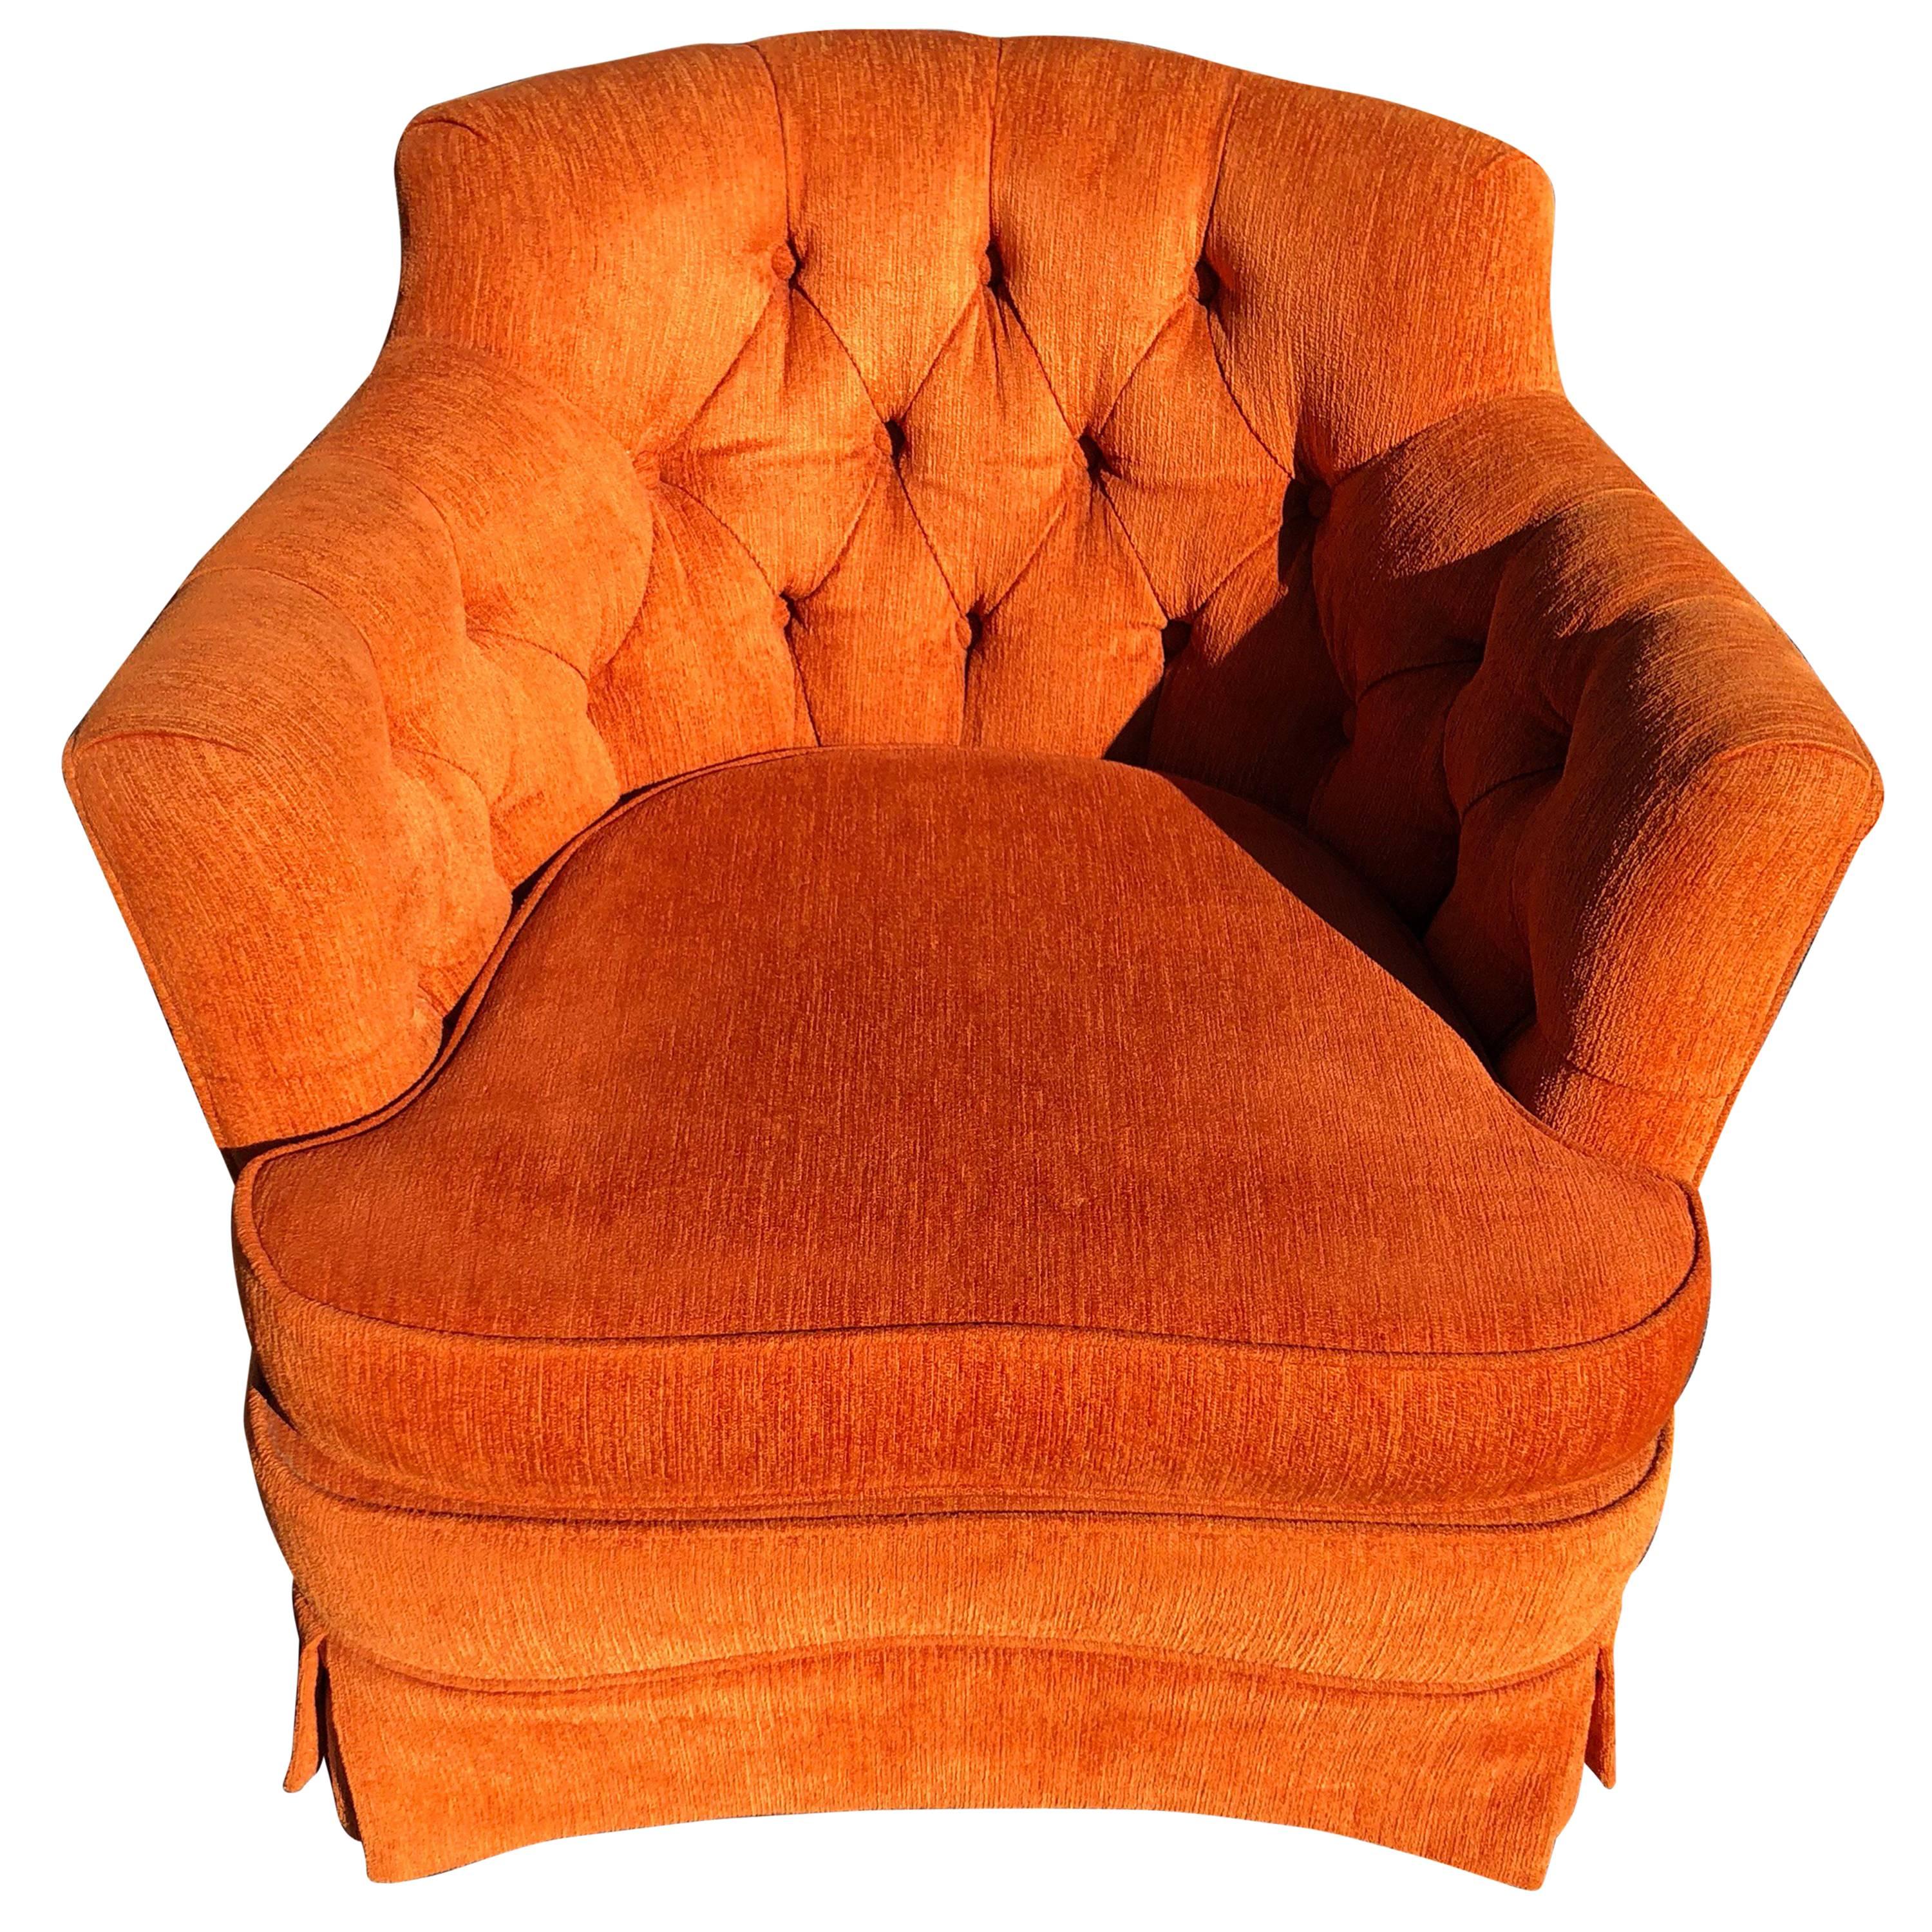 Hollywood Regency Tufted Orange Club Chair